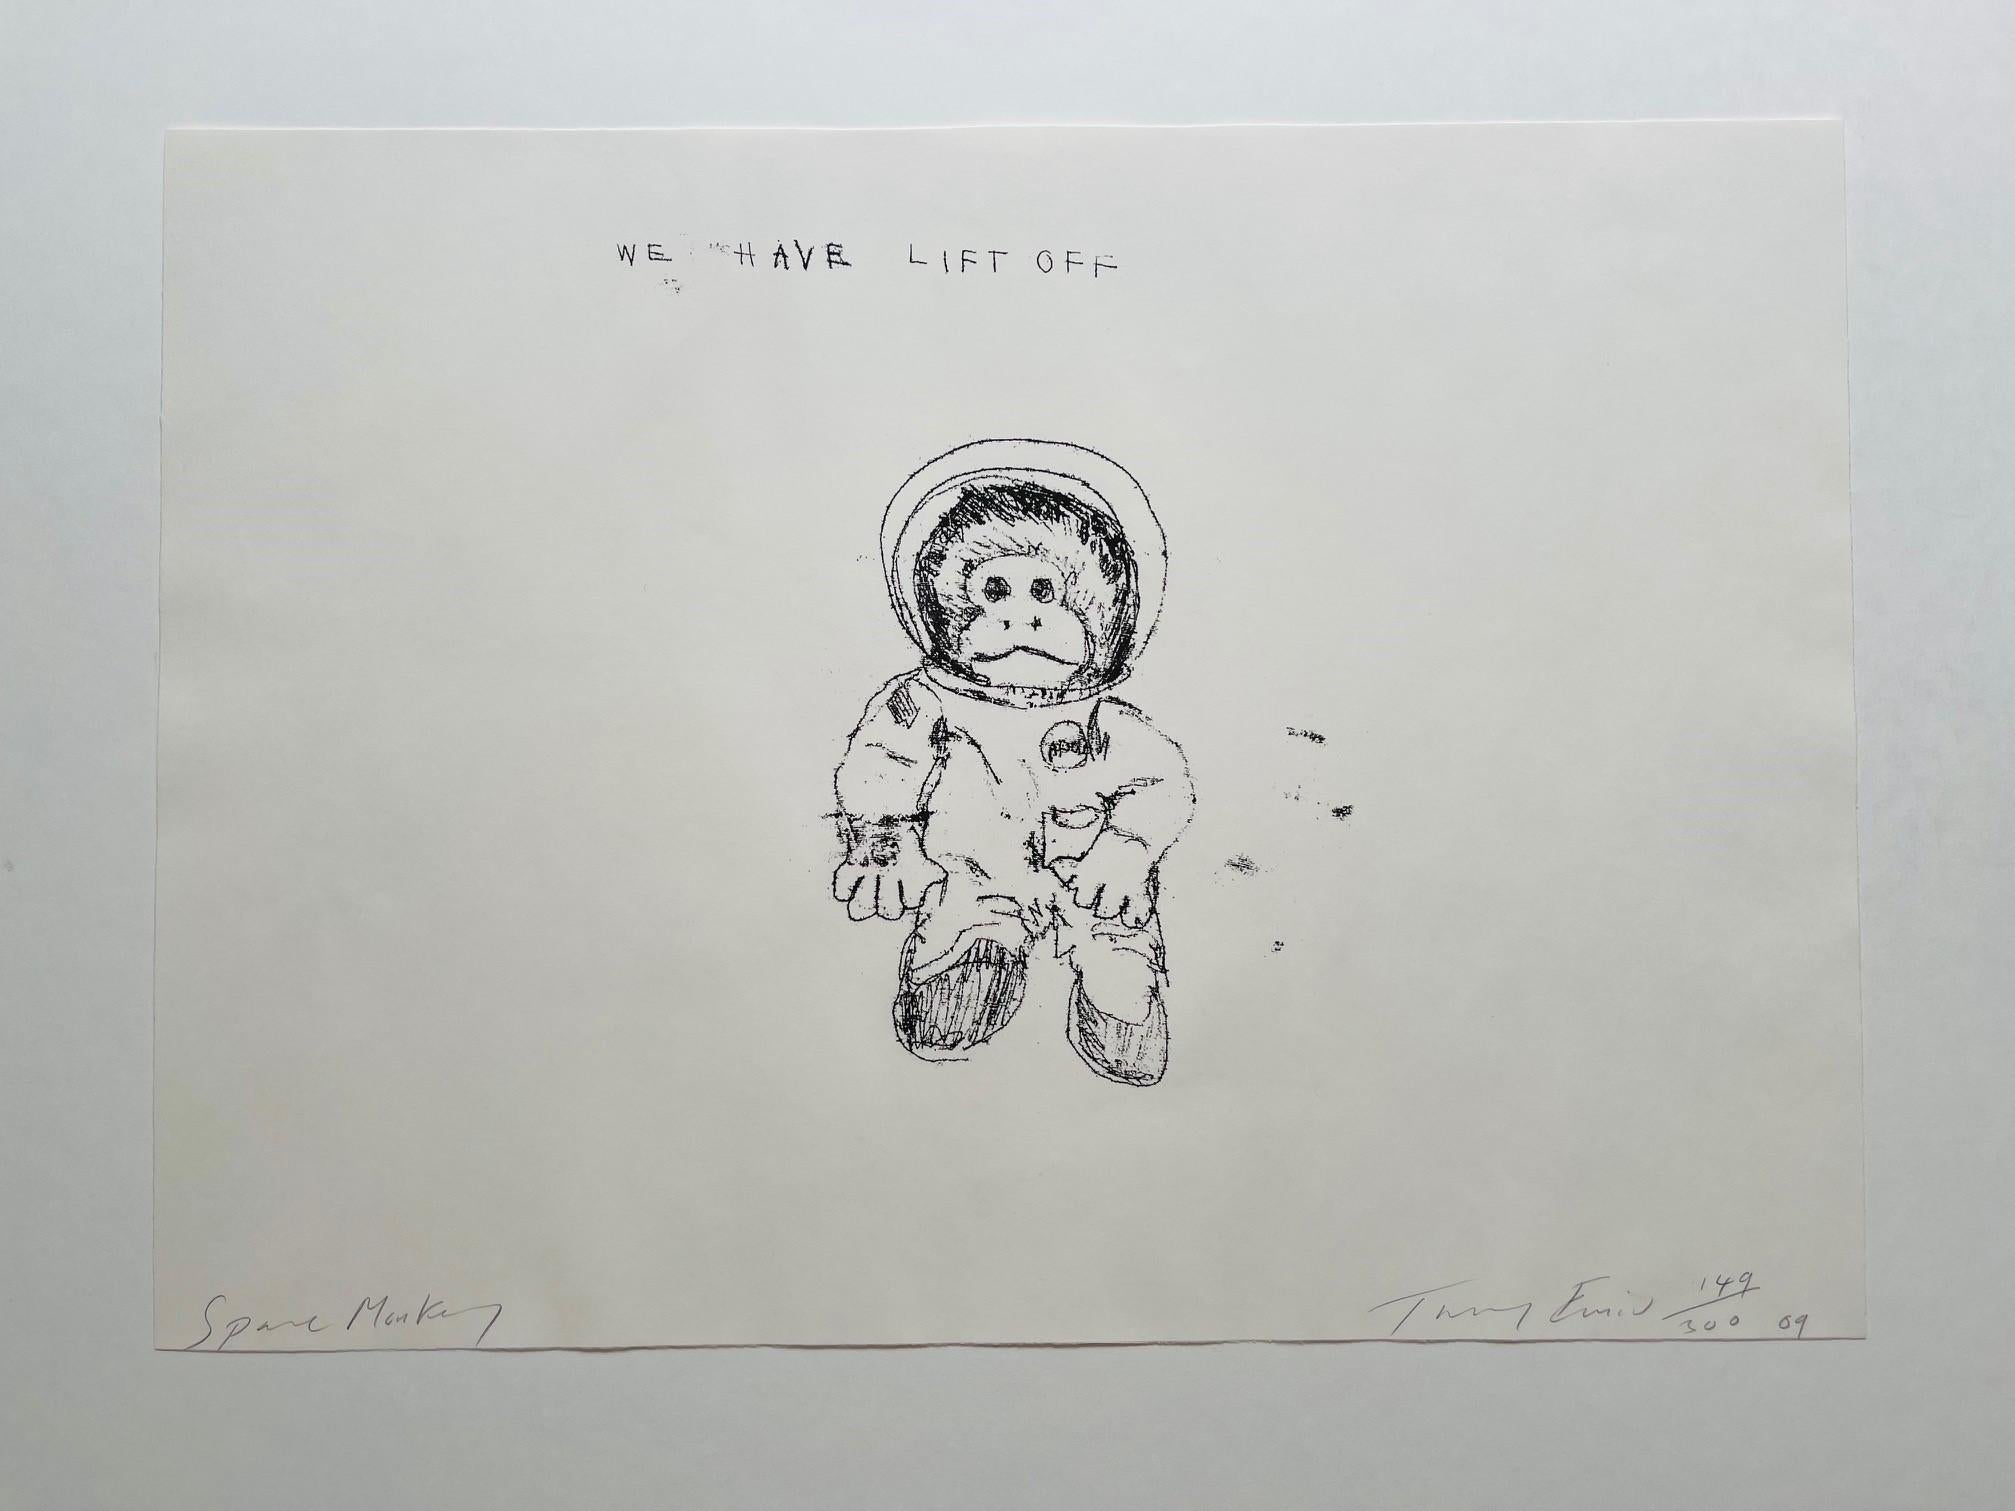 Space Monkey - Wir haben Lift Off (signiert) (2009), 2009
Signierte Lithographie
16 1/10 × 22 1/5 in
41 × 56.5 cm
Auflage von 300 Stück